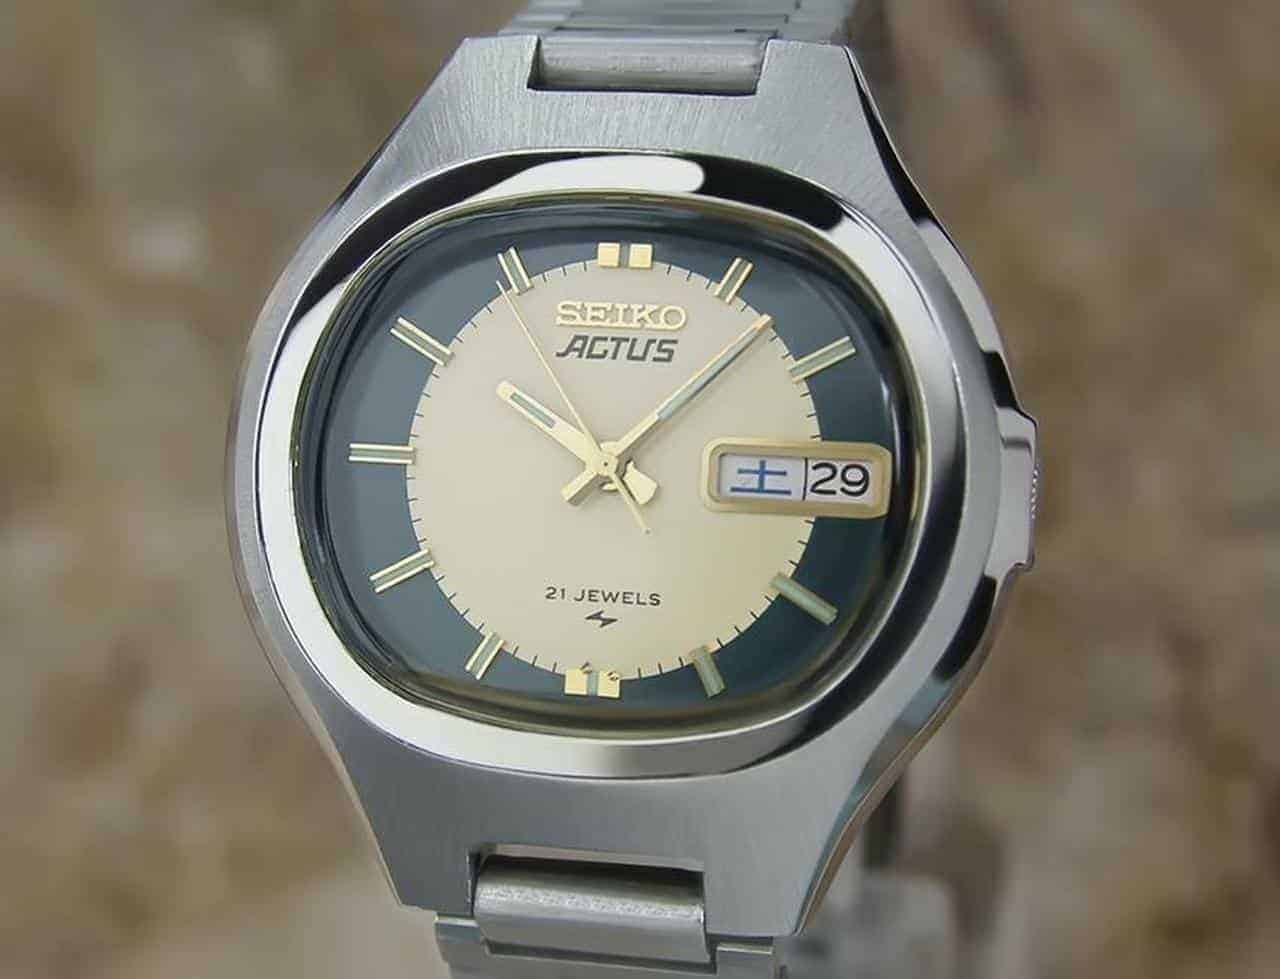 Đồng hồ Seiko 5 Actus - Sở hữu vẻ đẹp độc đáo | Shopwatch uy tín